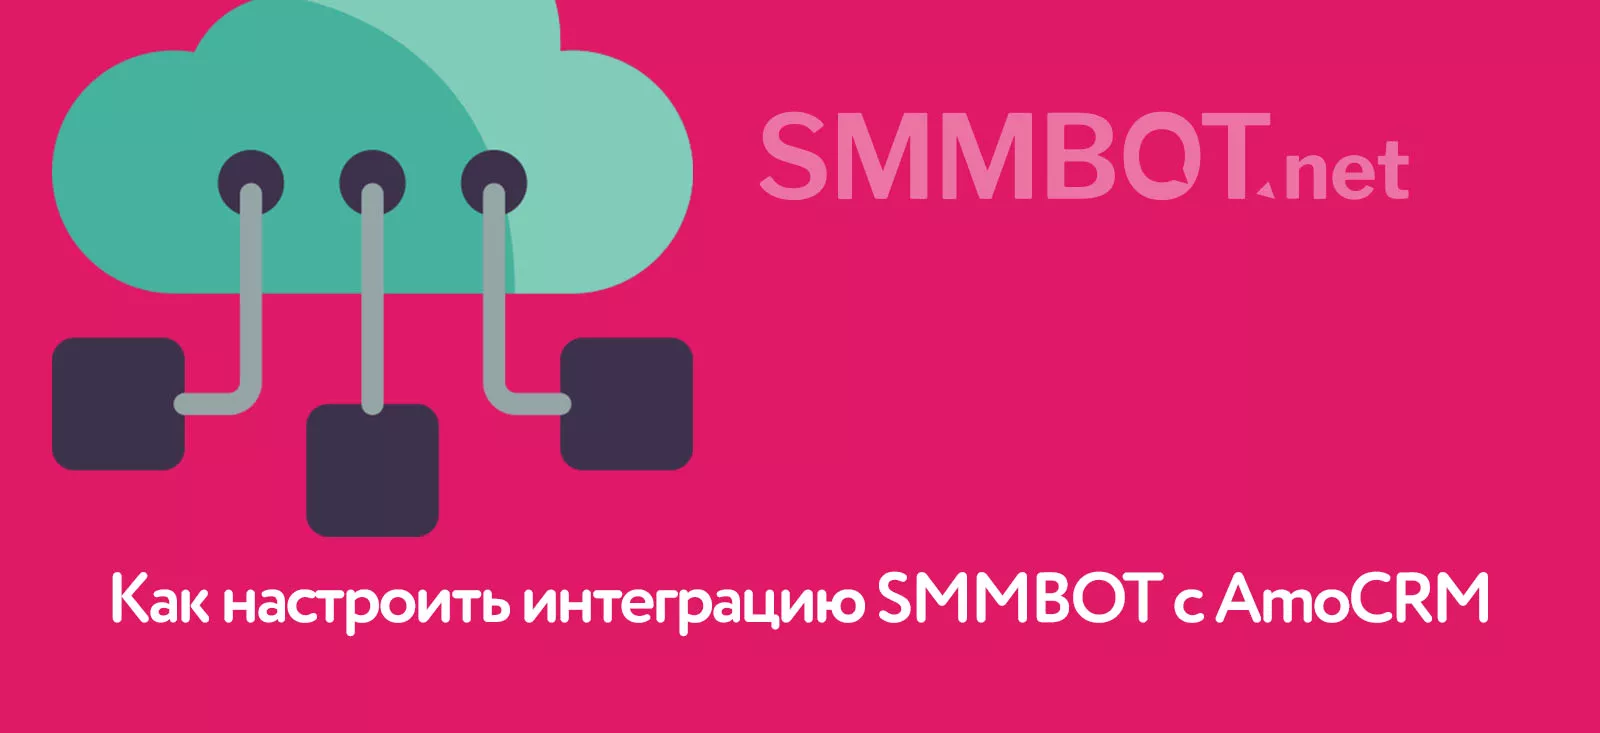 Как настроить интеграцию SMMBOT с AmoCRM с помощью Webhook и сервиса Integromat